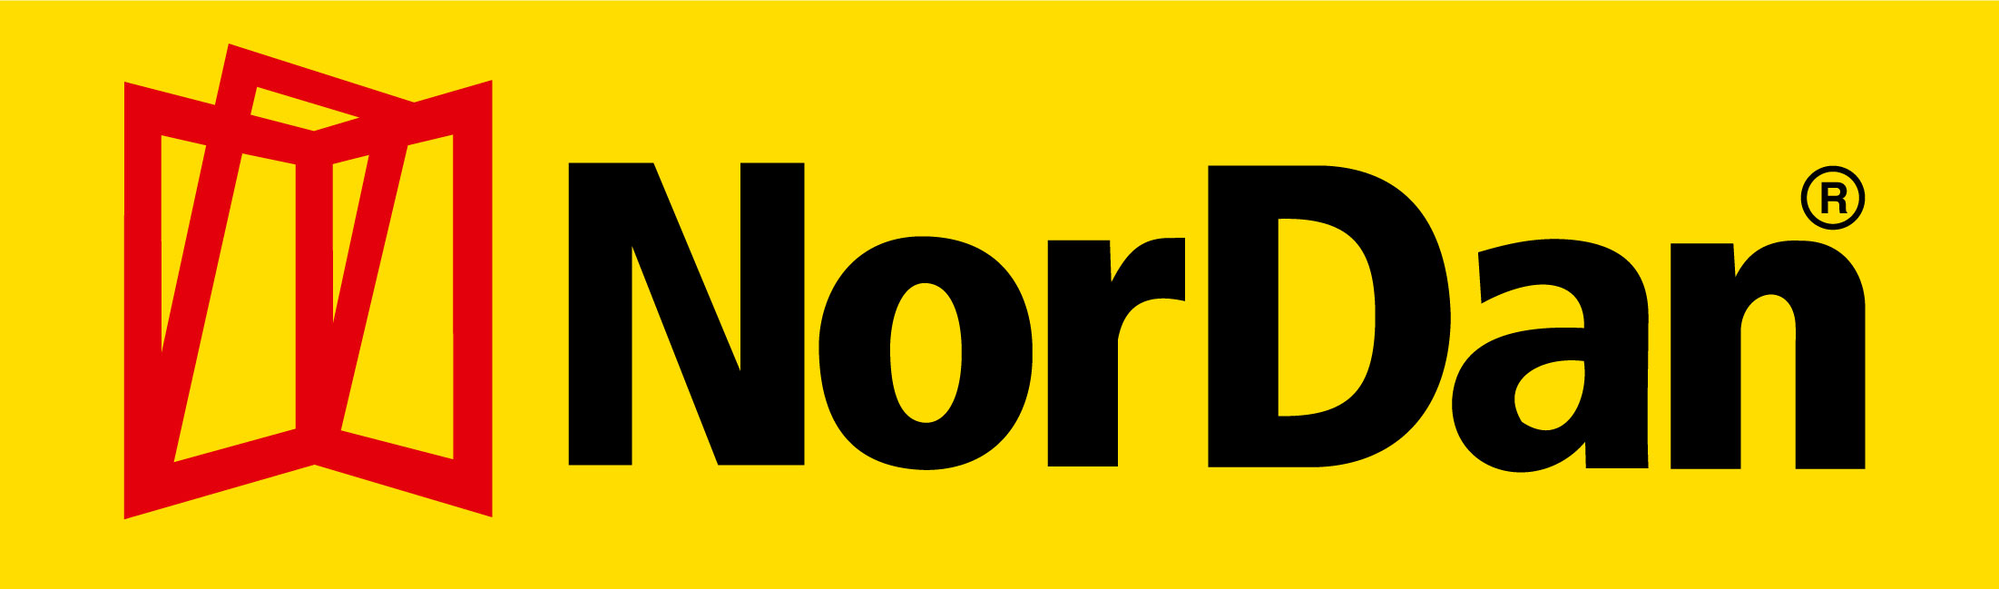 Nordan logotyp